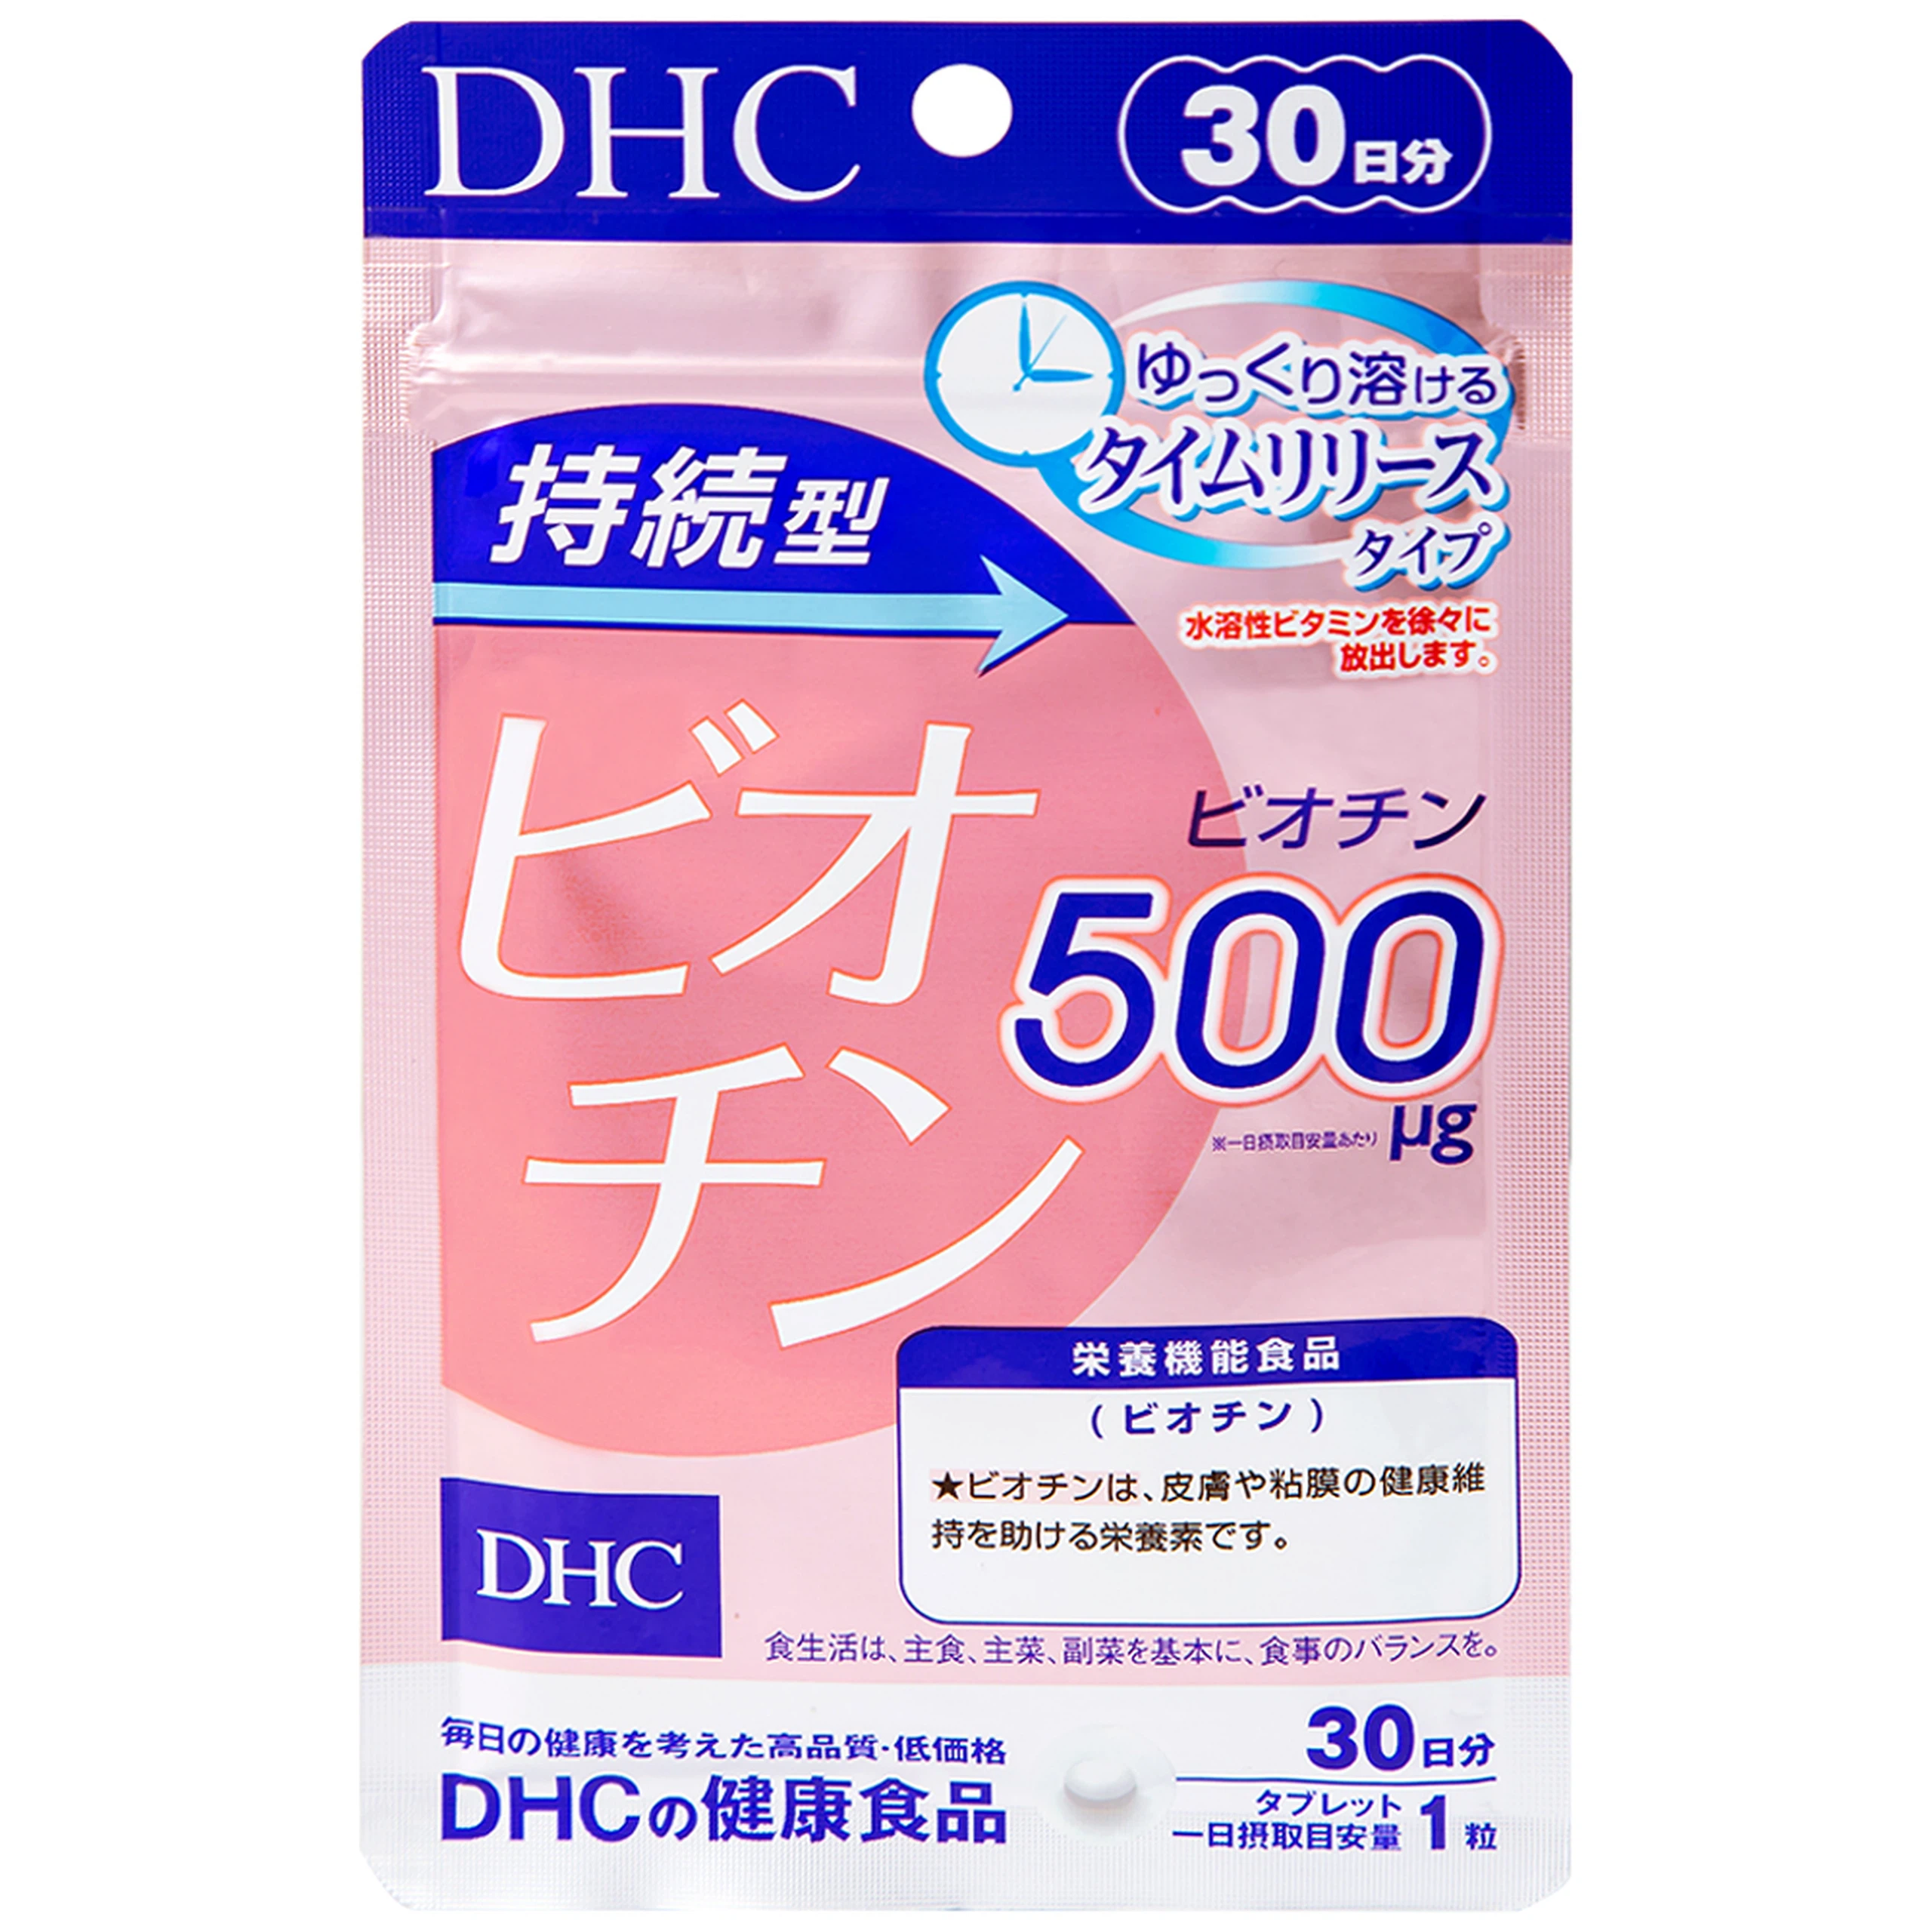 Viên uống DHC Sustained Release Biotin bổ sung biotin cung cấp dưỡng chất cho da và tóc (30 viên)